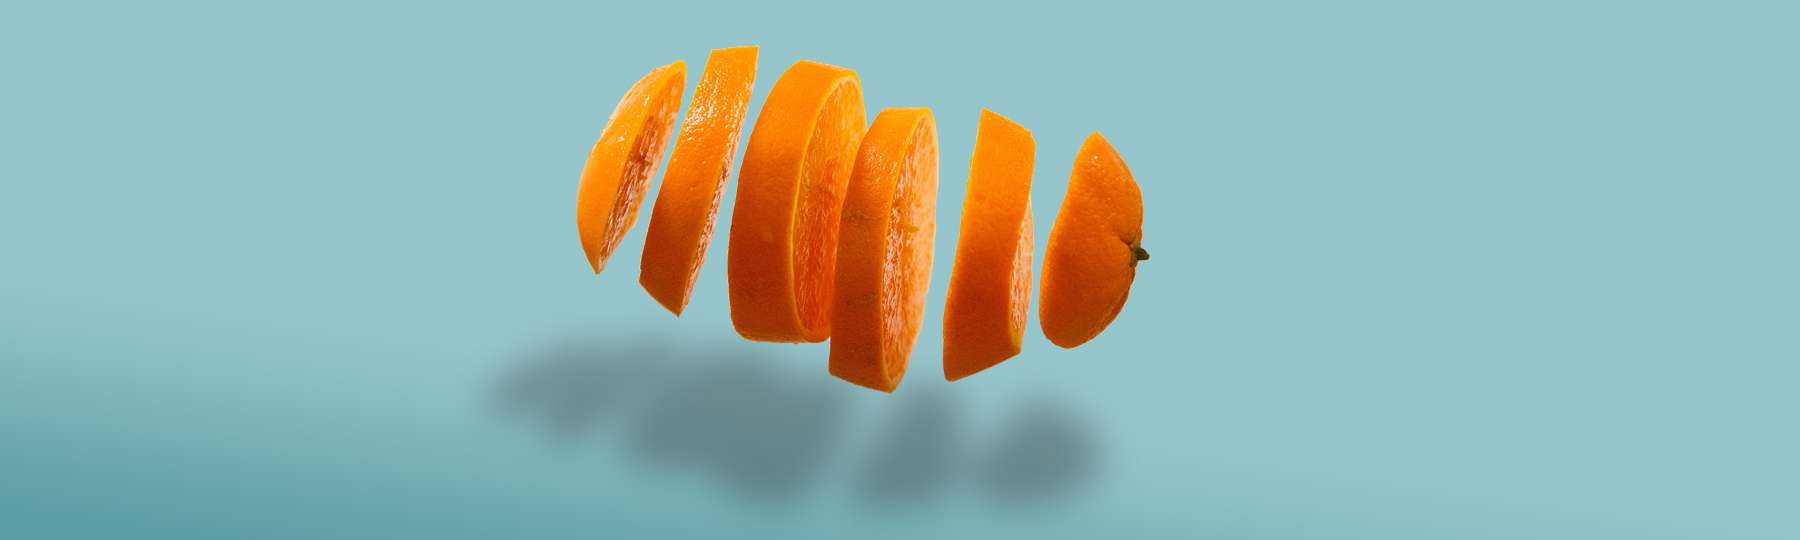 Orange sliced operator